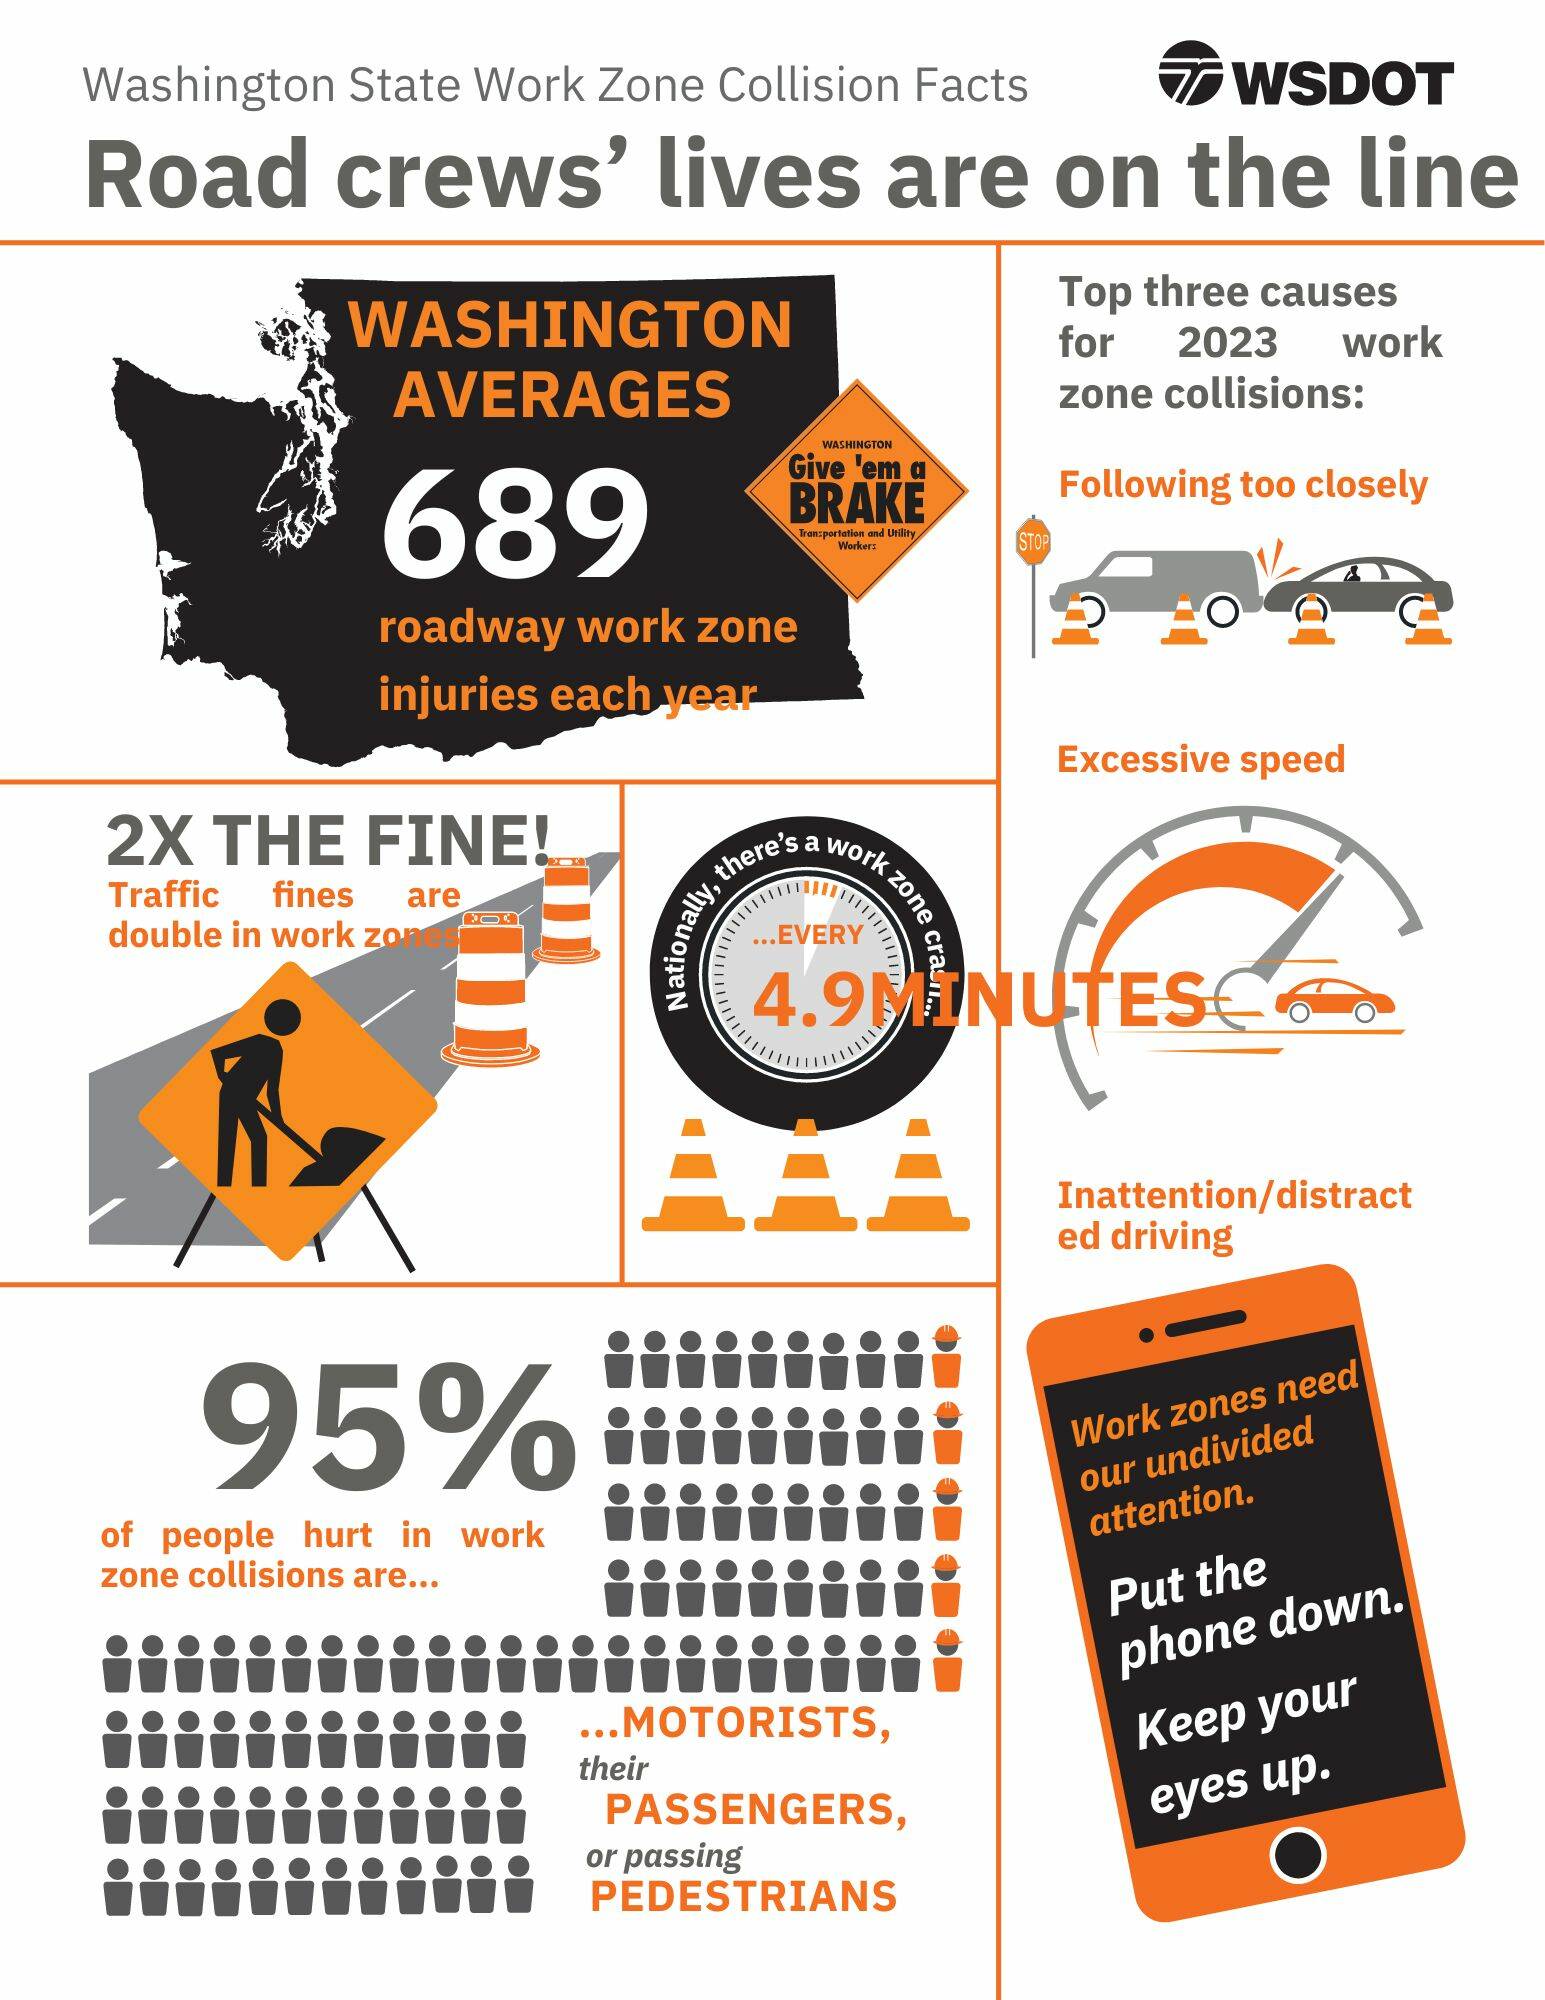 Image courtesy of Washington State Department of Transportation.